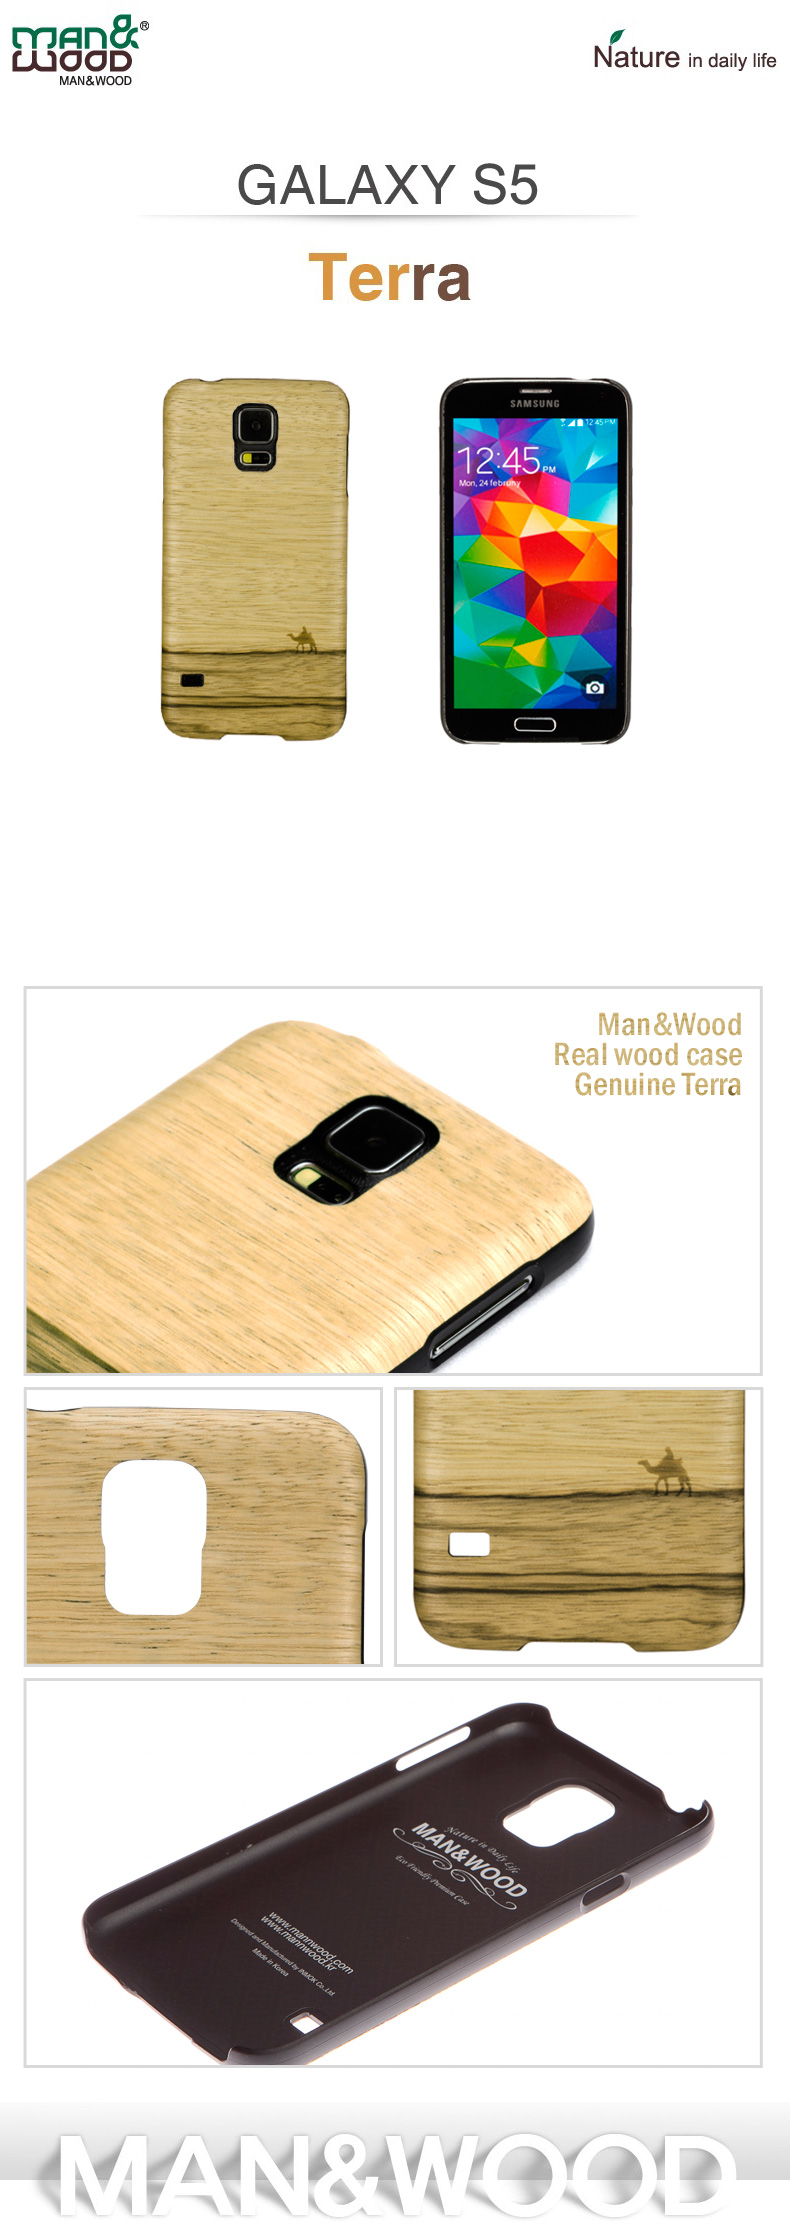 商品詳細 GALAXY S5 ケースM&W天然木Real wood cas Genuine Terrae